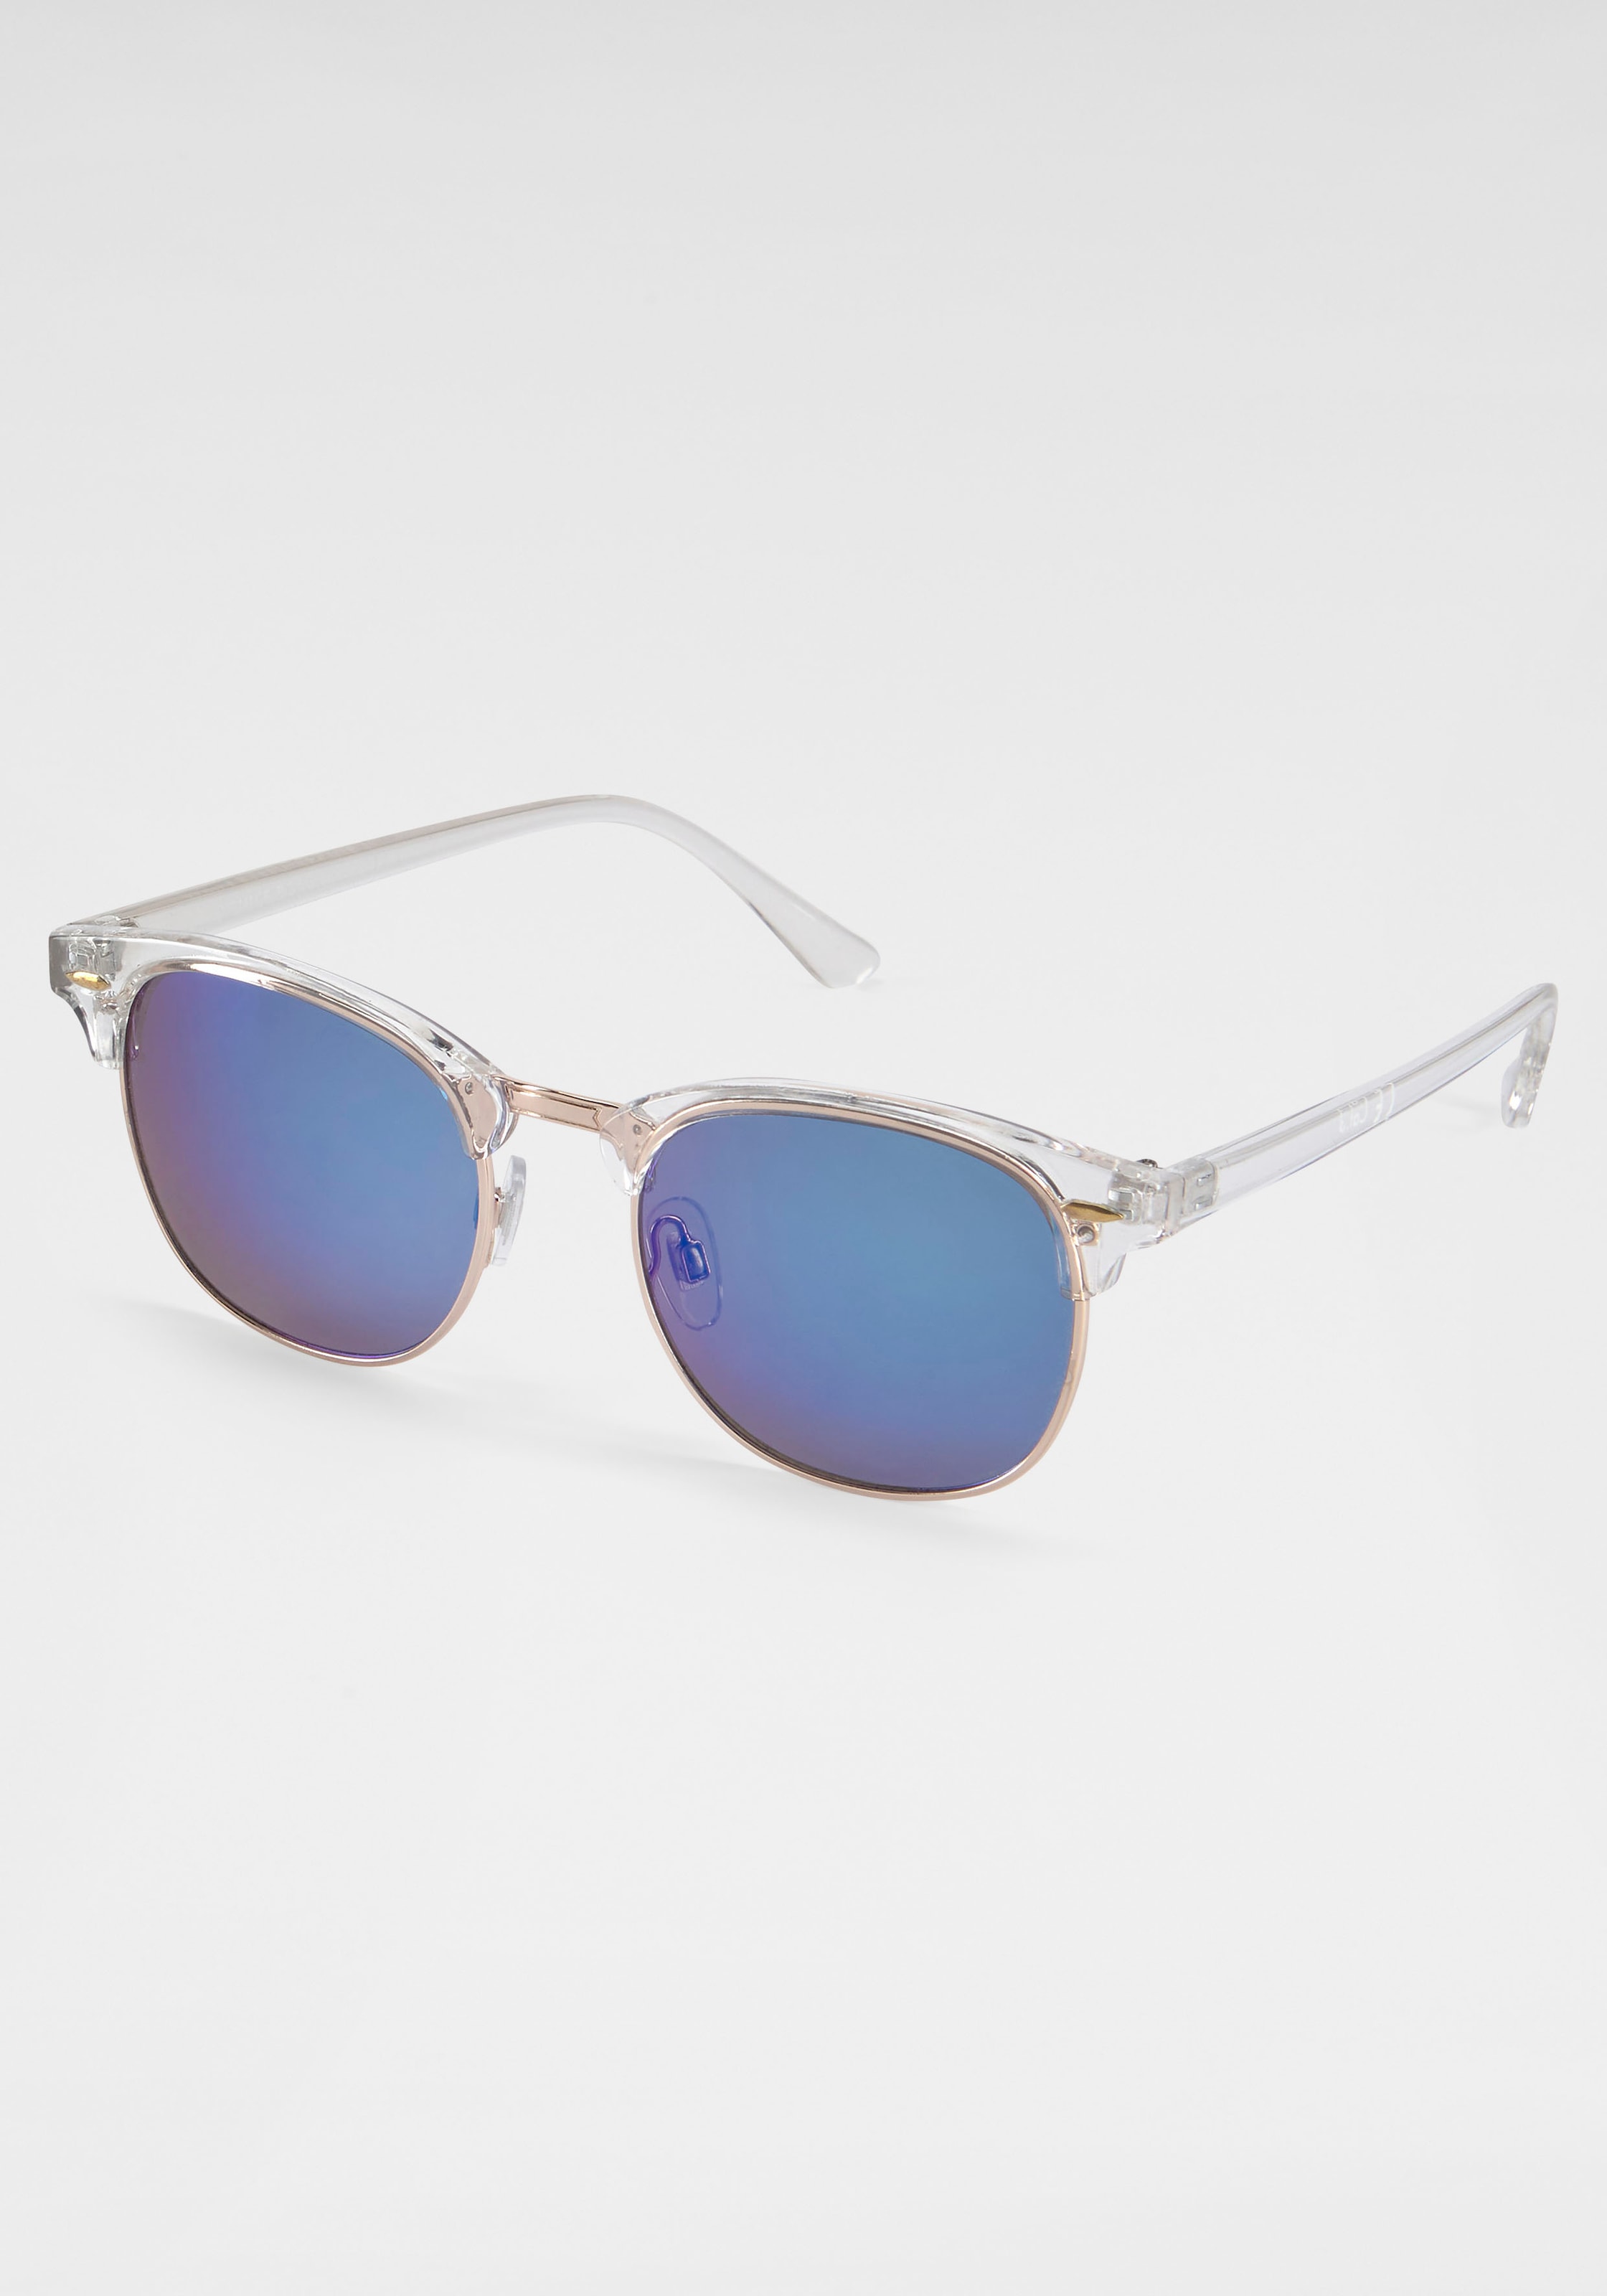 kaufen einfach Sonnenbrille Damen Trendige Eckige online